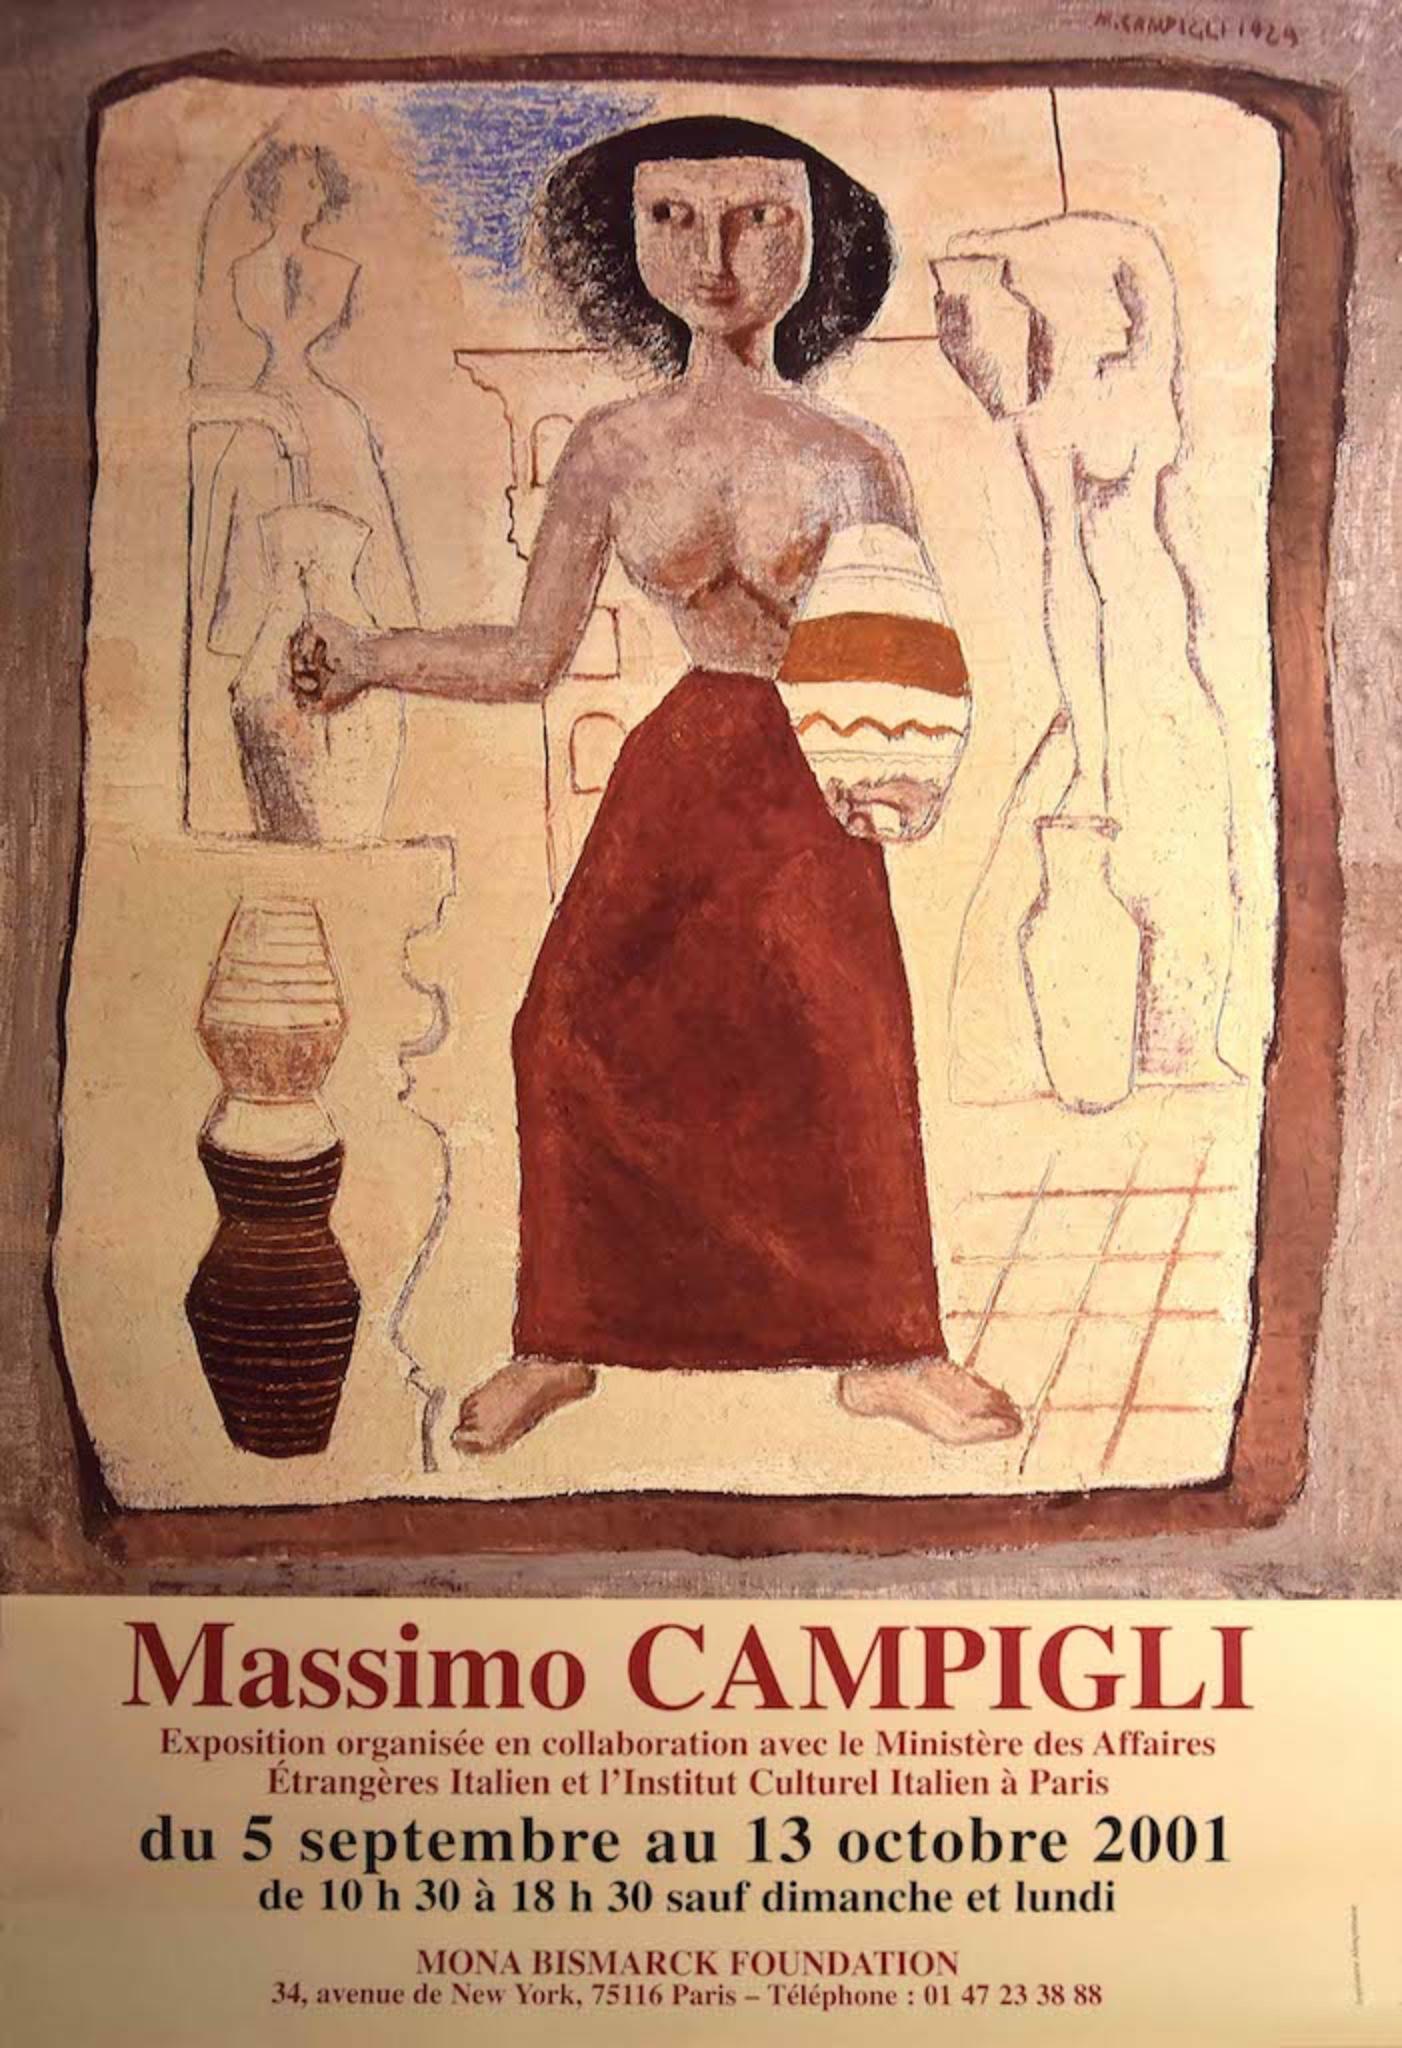 Frau ist ein Vintage-Ausstellungsplakat einer Ausstellung von Massino Campigli's Werken, die 2001 in der Mona Bismarck Stiftung stattfand.

Guter Zustand.

Massimo Campigli (Berlin, 1895 - Saint-Tropez, 1971) war ein italienischer Maler. Im Jahr